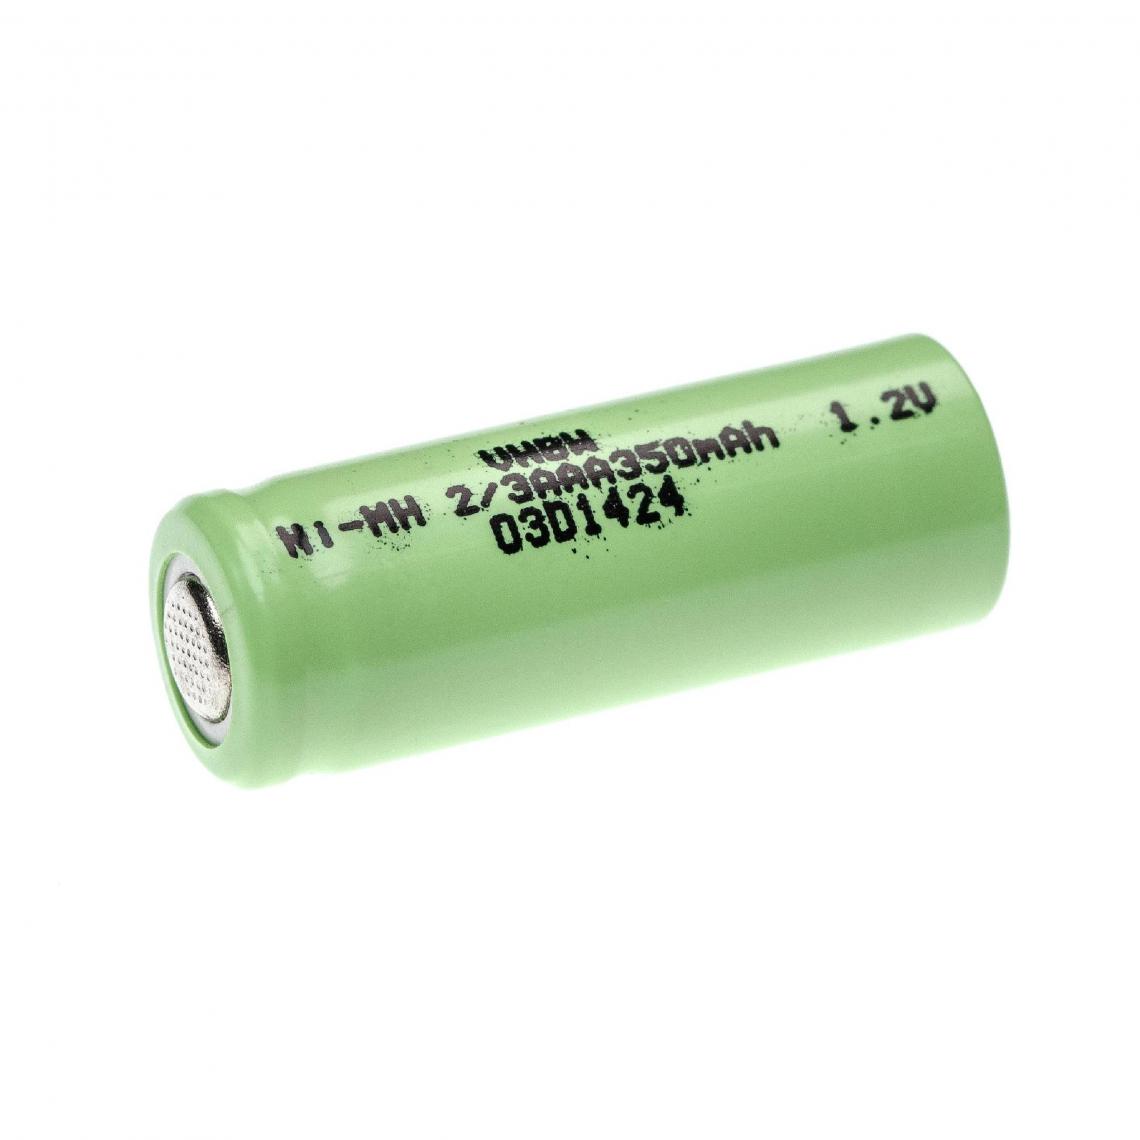 Vhbw - vhbw Cellule de batterie H4002 - 350 mAh, 1,2 V, NiMH - Autre appareil de mesure